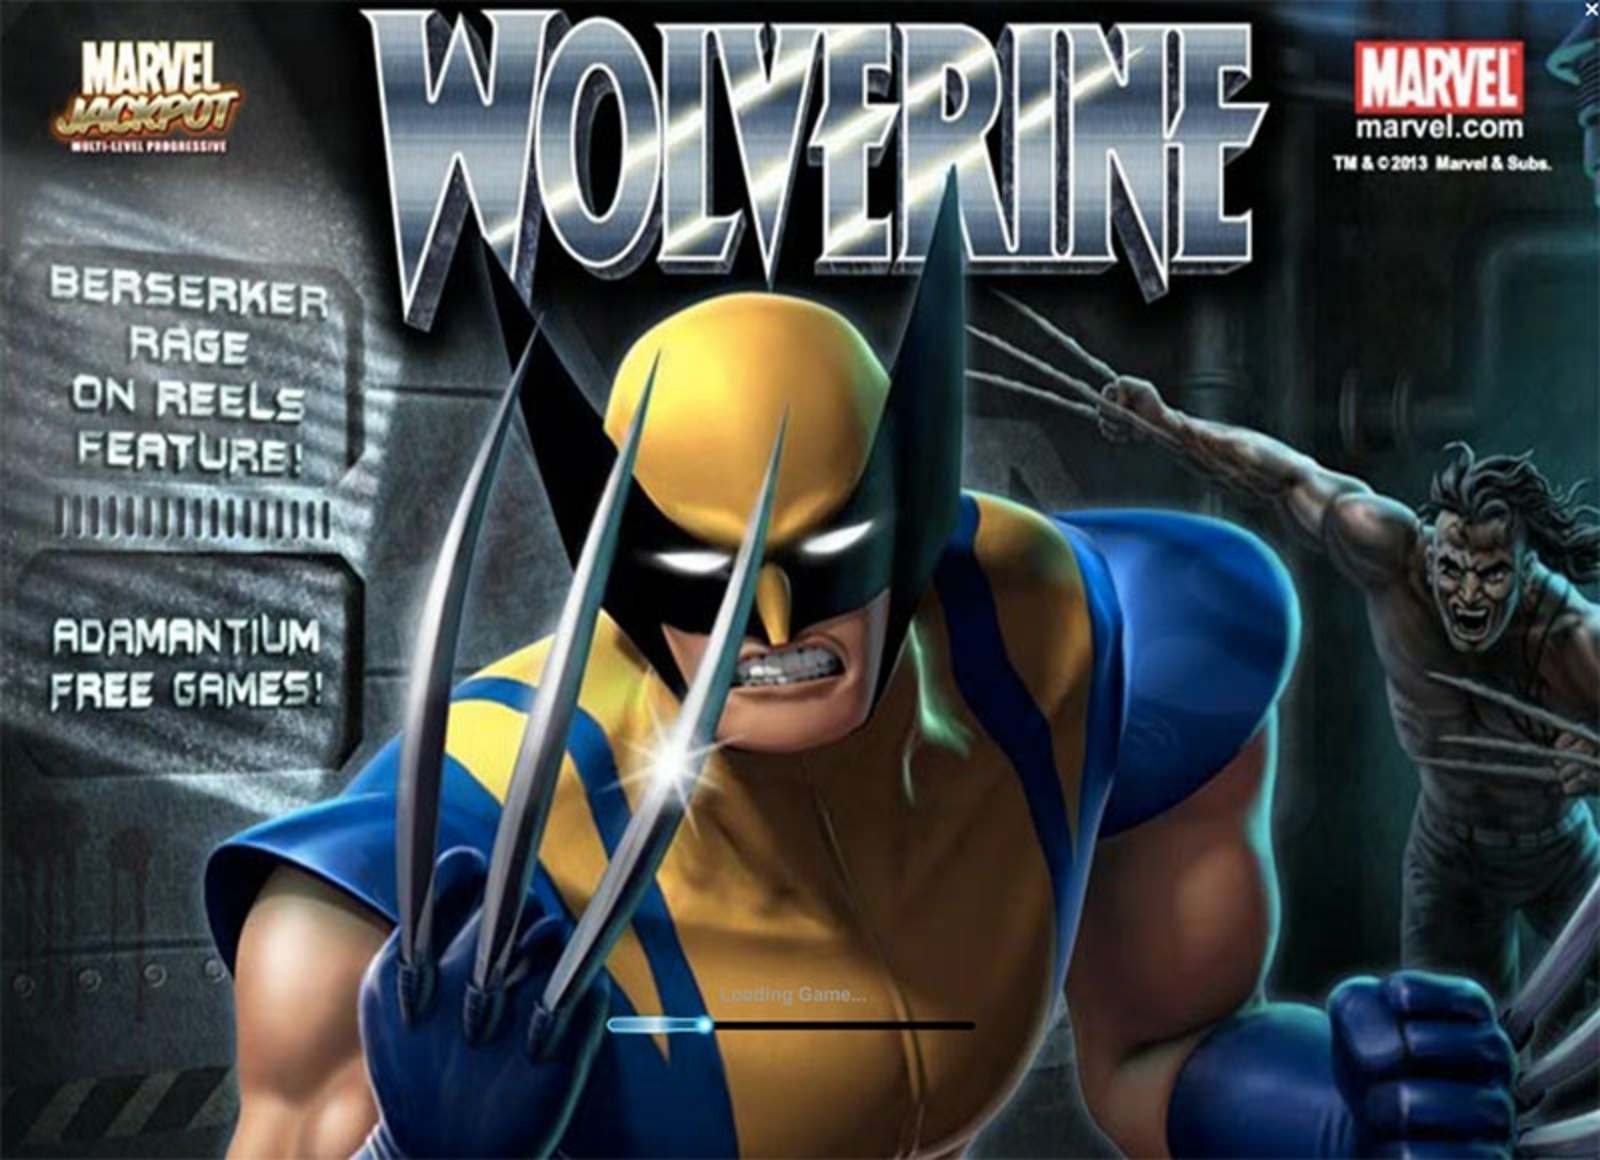 Wolverine demo